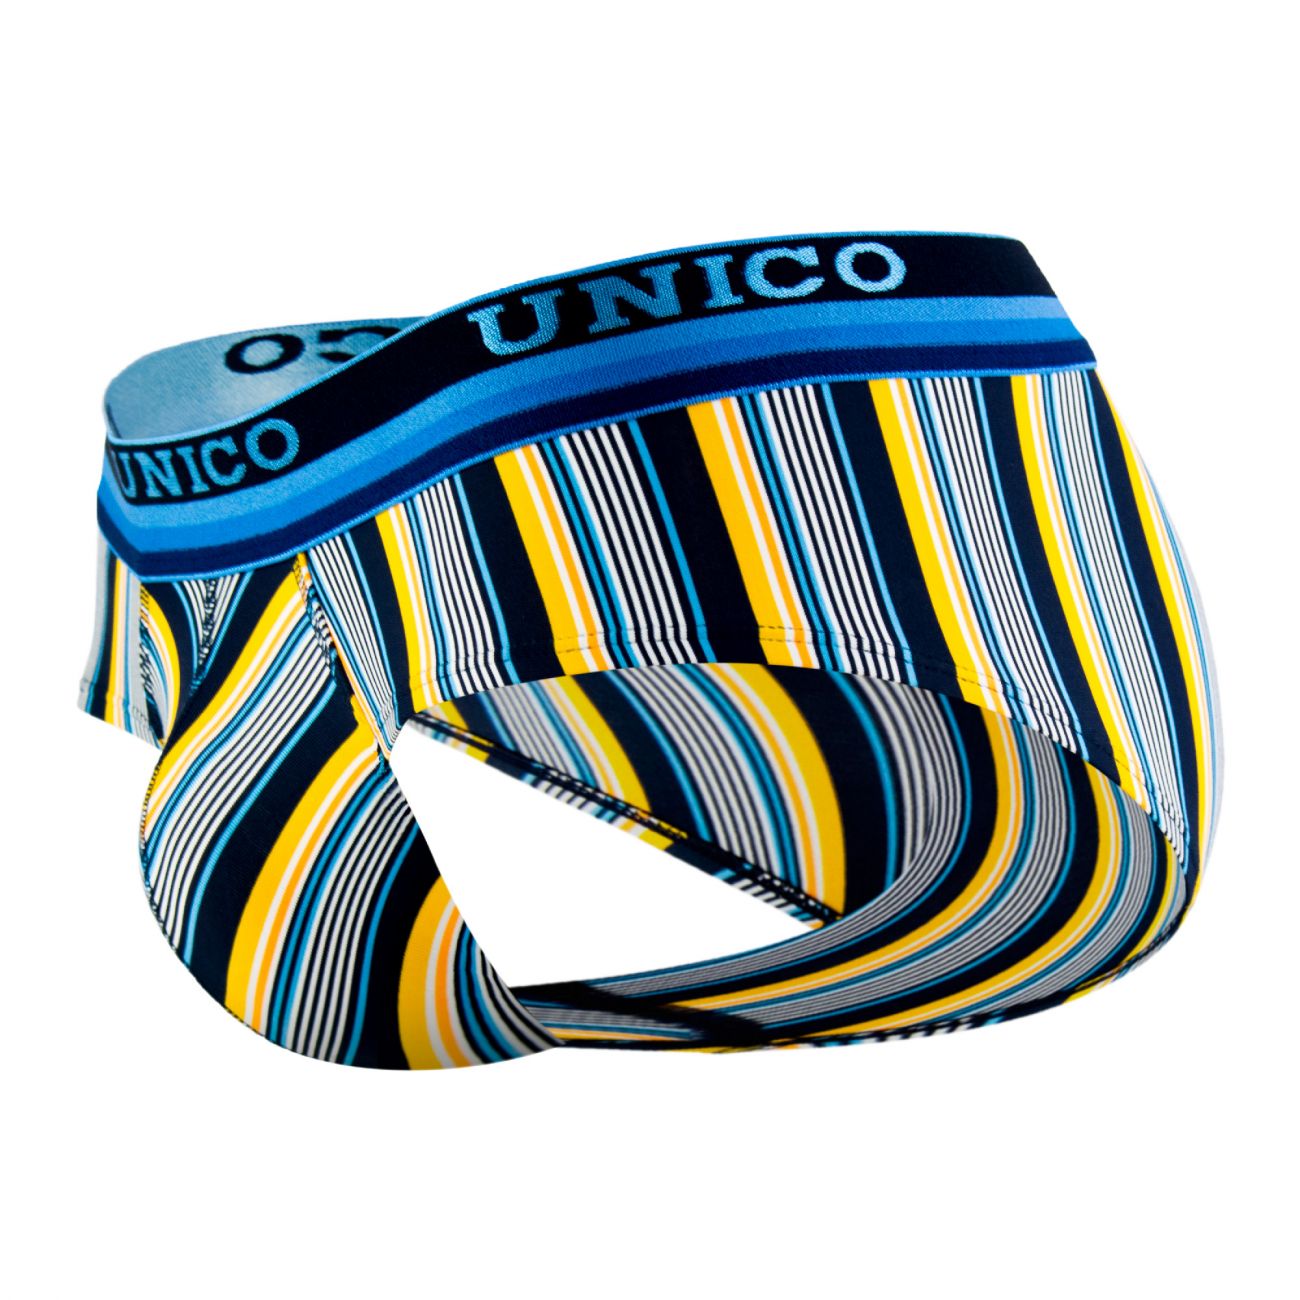 Unico 1802020112993 Briefs Vinicius